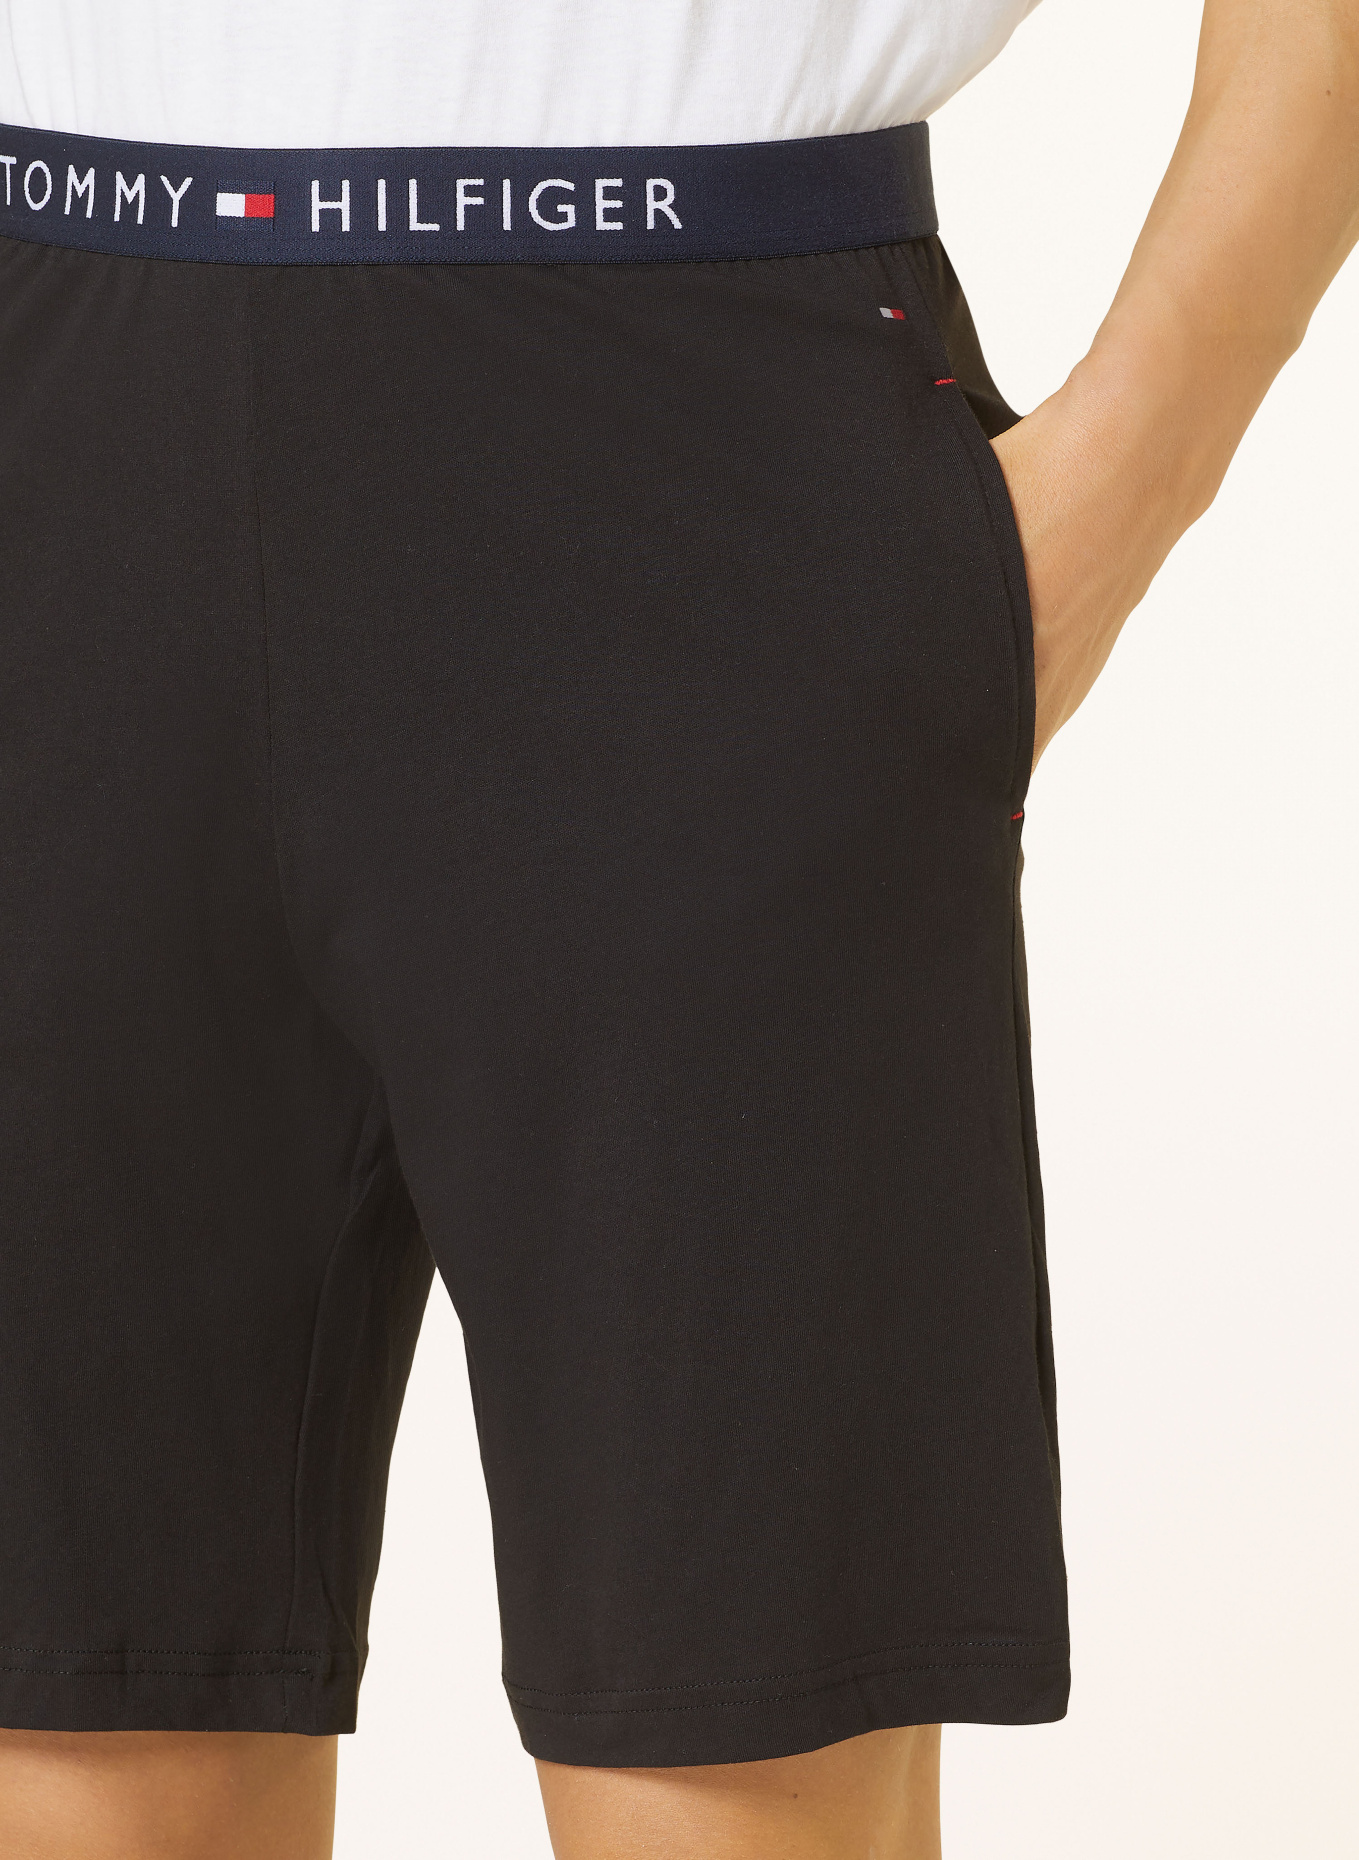 TOMMY HILFIGER Pajama shorts, Color: BLACK (Image 5)